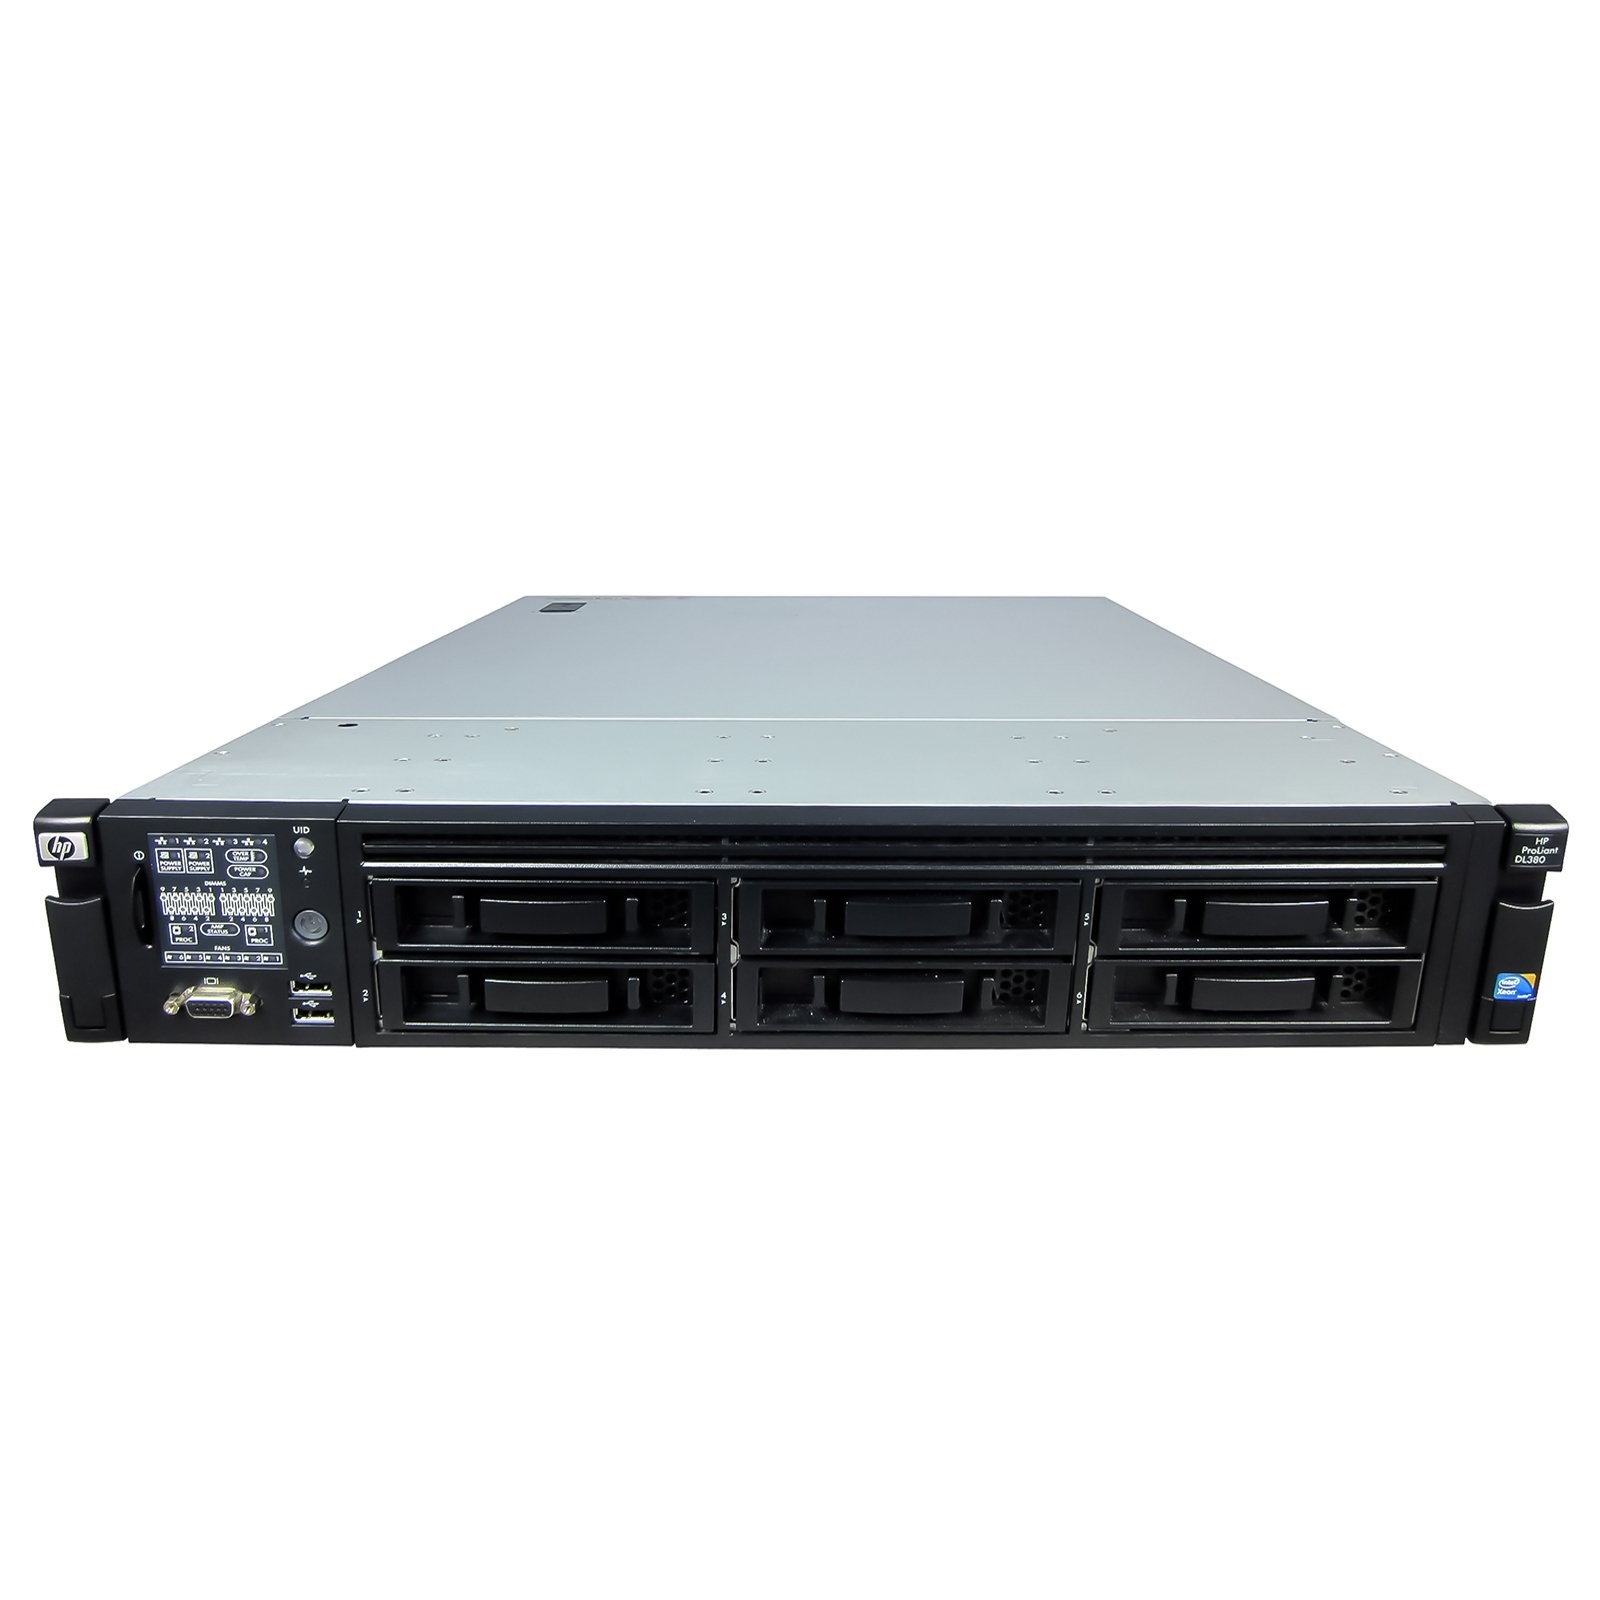 Подробное фото Сервер HP Proliant DL380 G7 Xeon 2x E5645 48Gb DDR3R 6x noHDD 3.5" SAS RAID p410i, 512Mb 2xPSU 460W